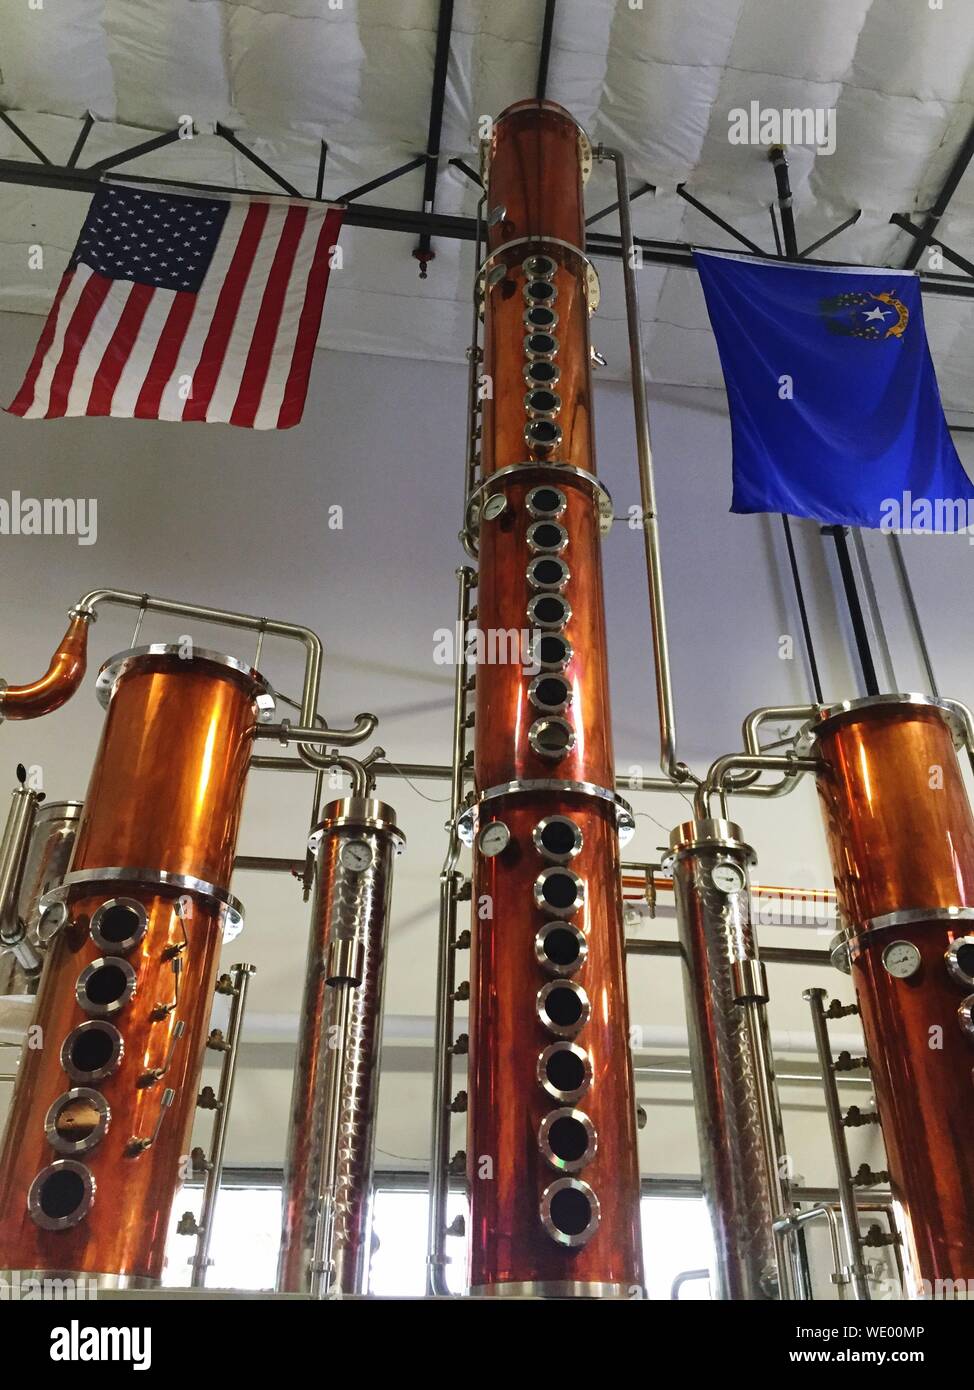 Basso Angolo di visione del calibro di profondità in alambicchi di rame in distilleria Foto Stock